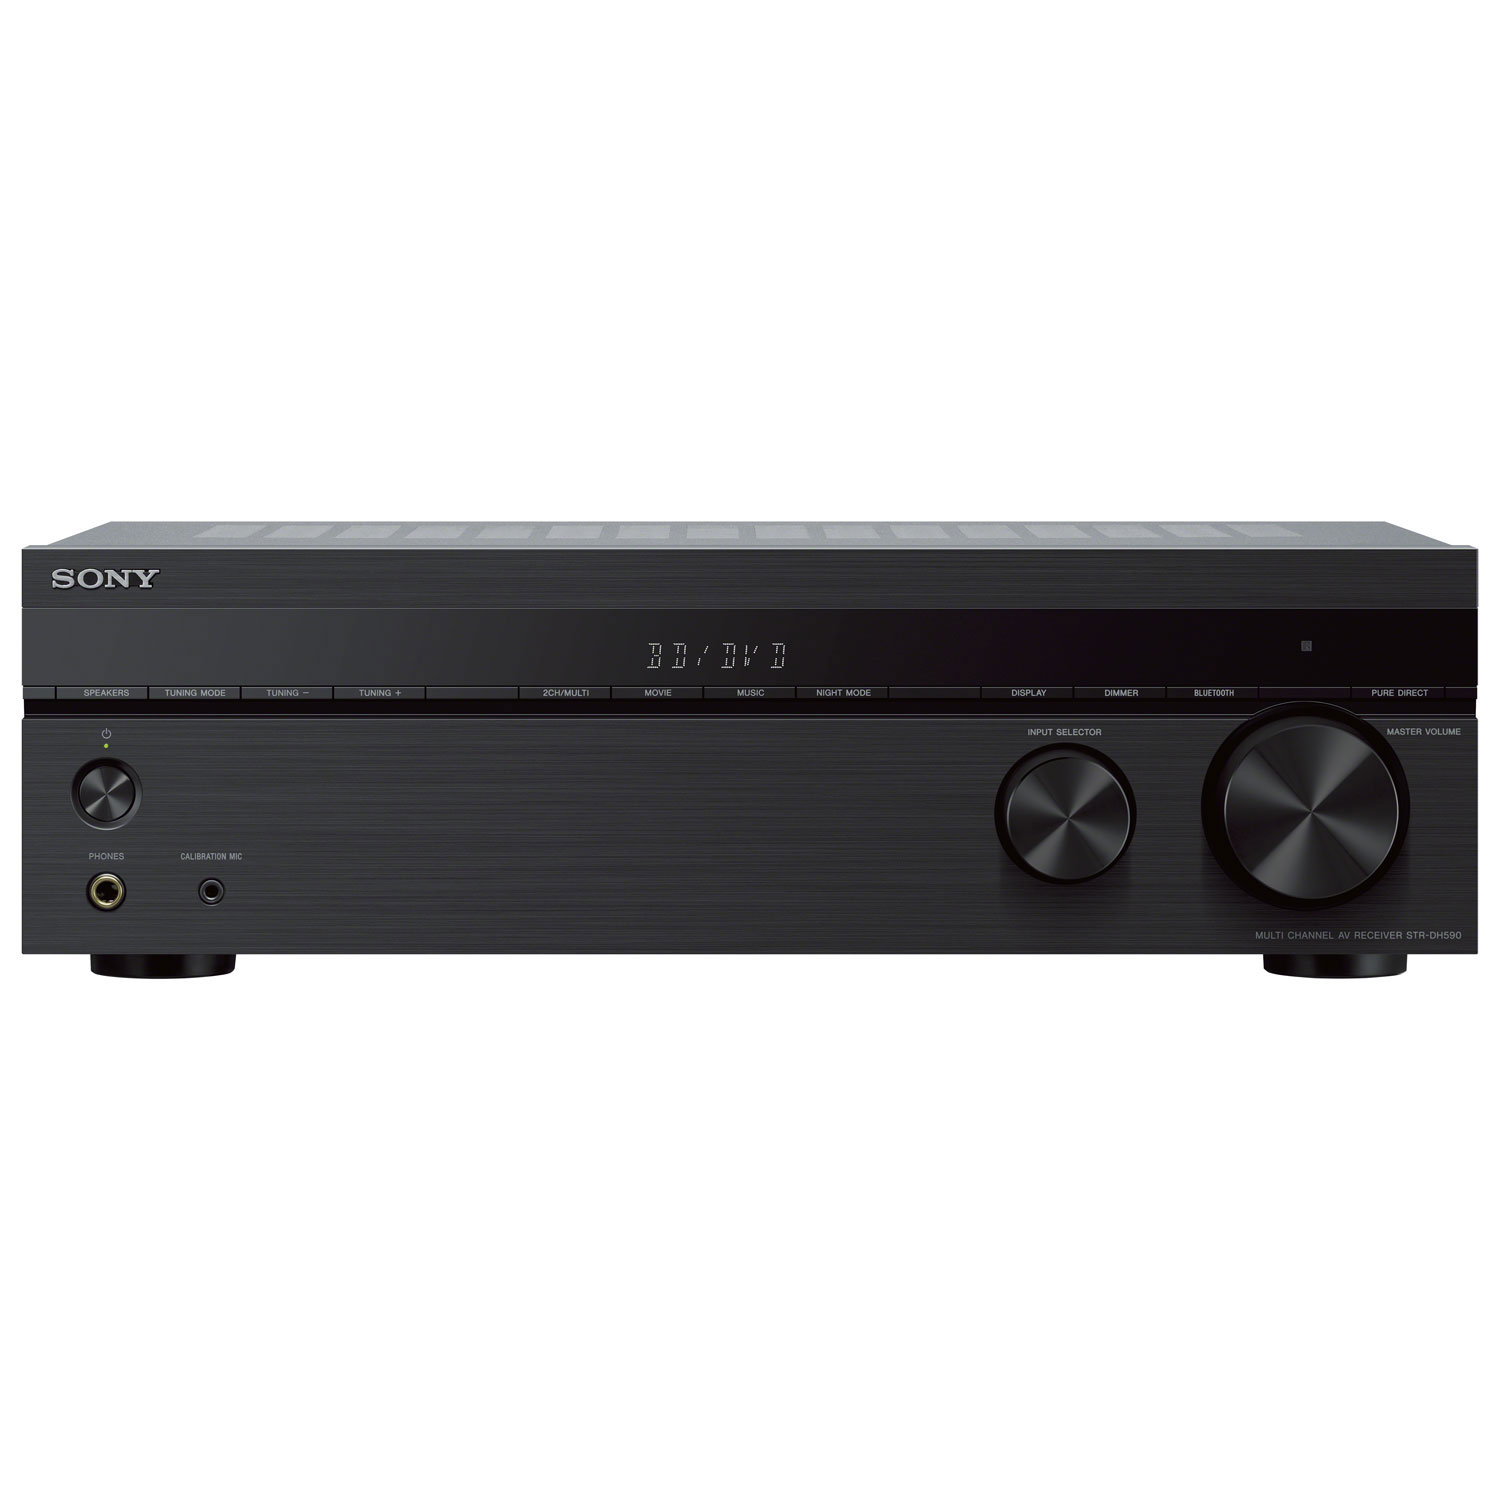 Open Box - Sony STR-DH590 5.2 Channel 4K Ultra HD AV Receiver